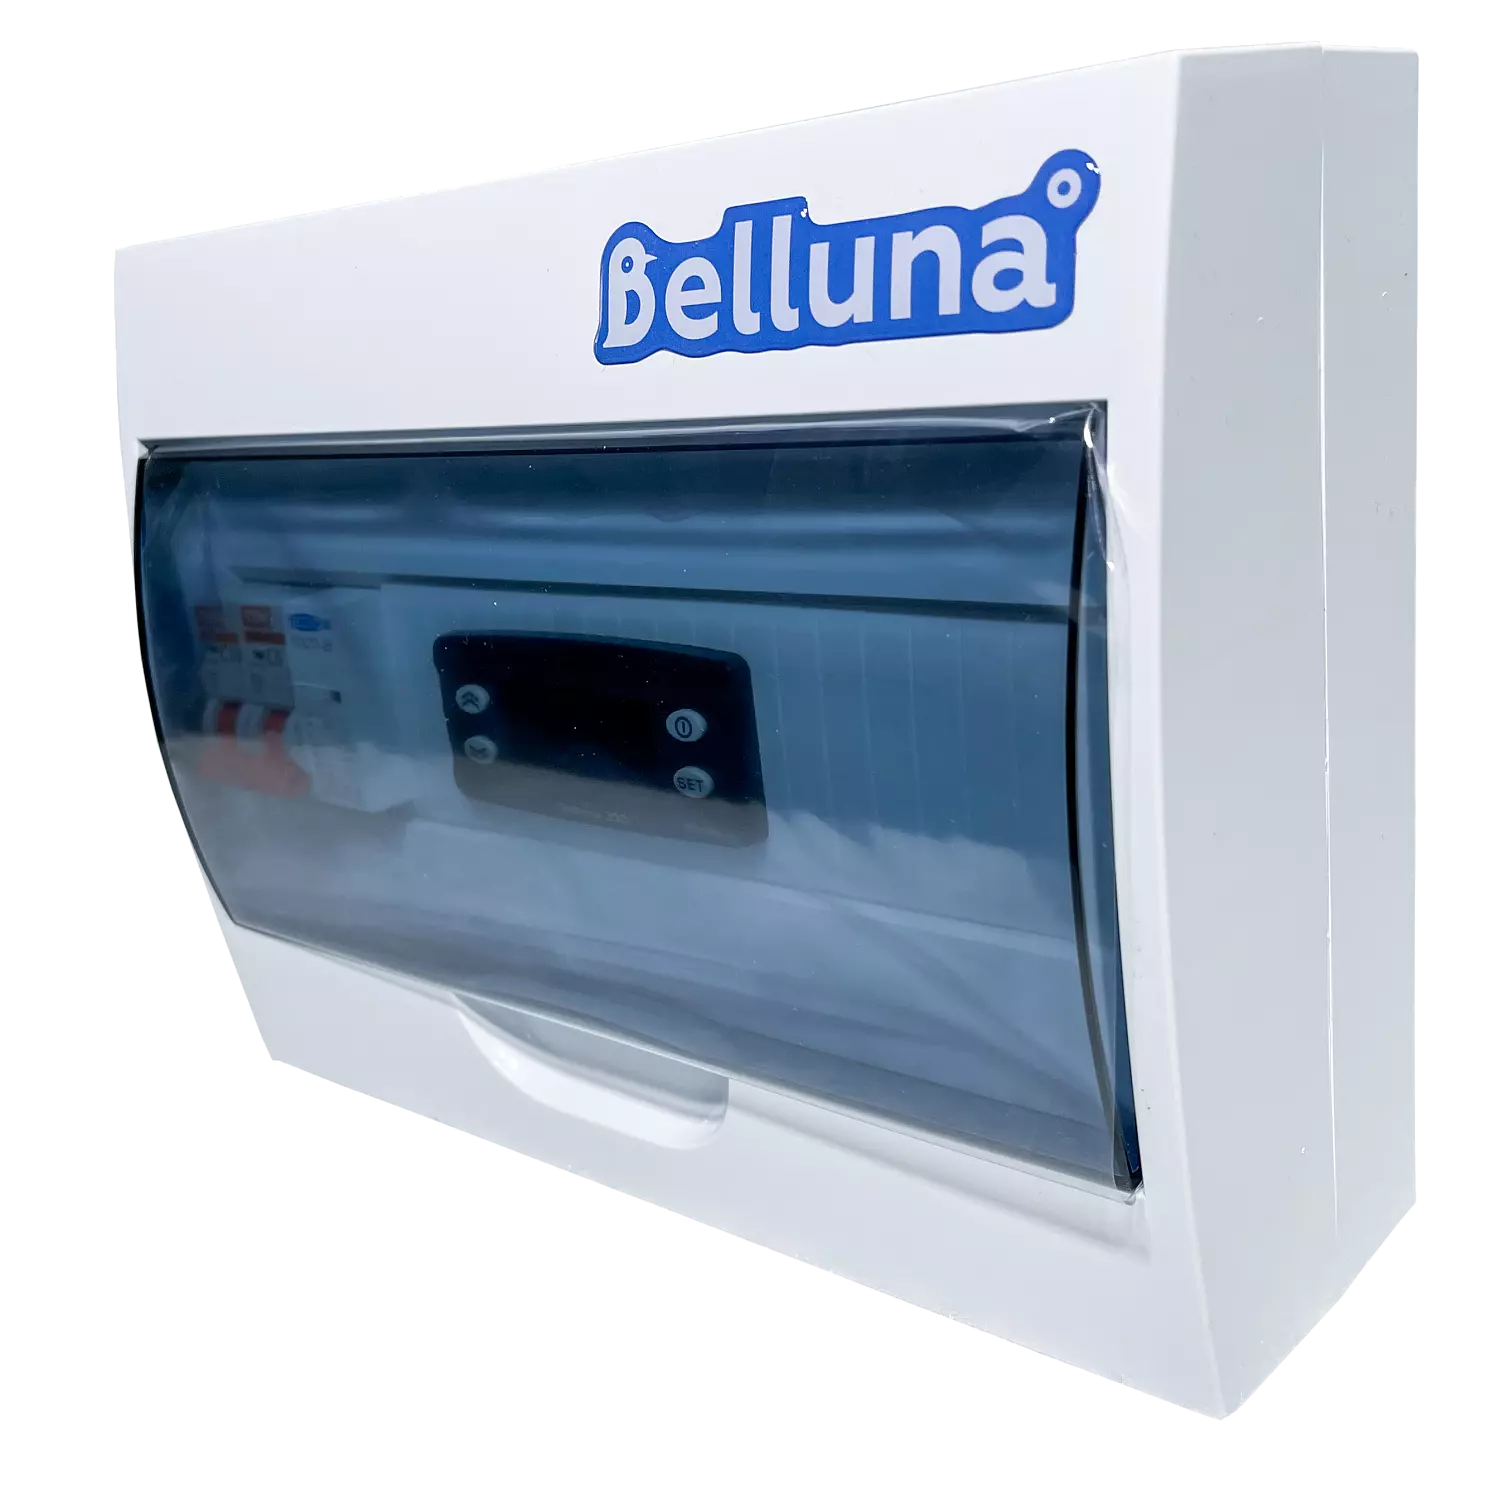 сплит-система Belluna U316 Уфа